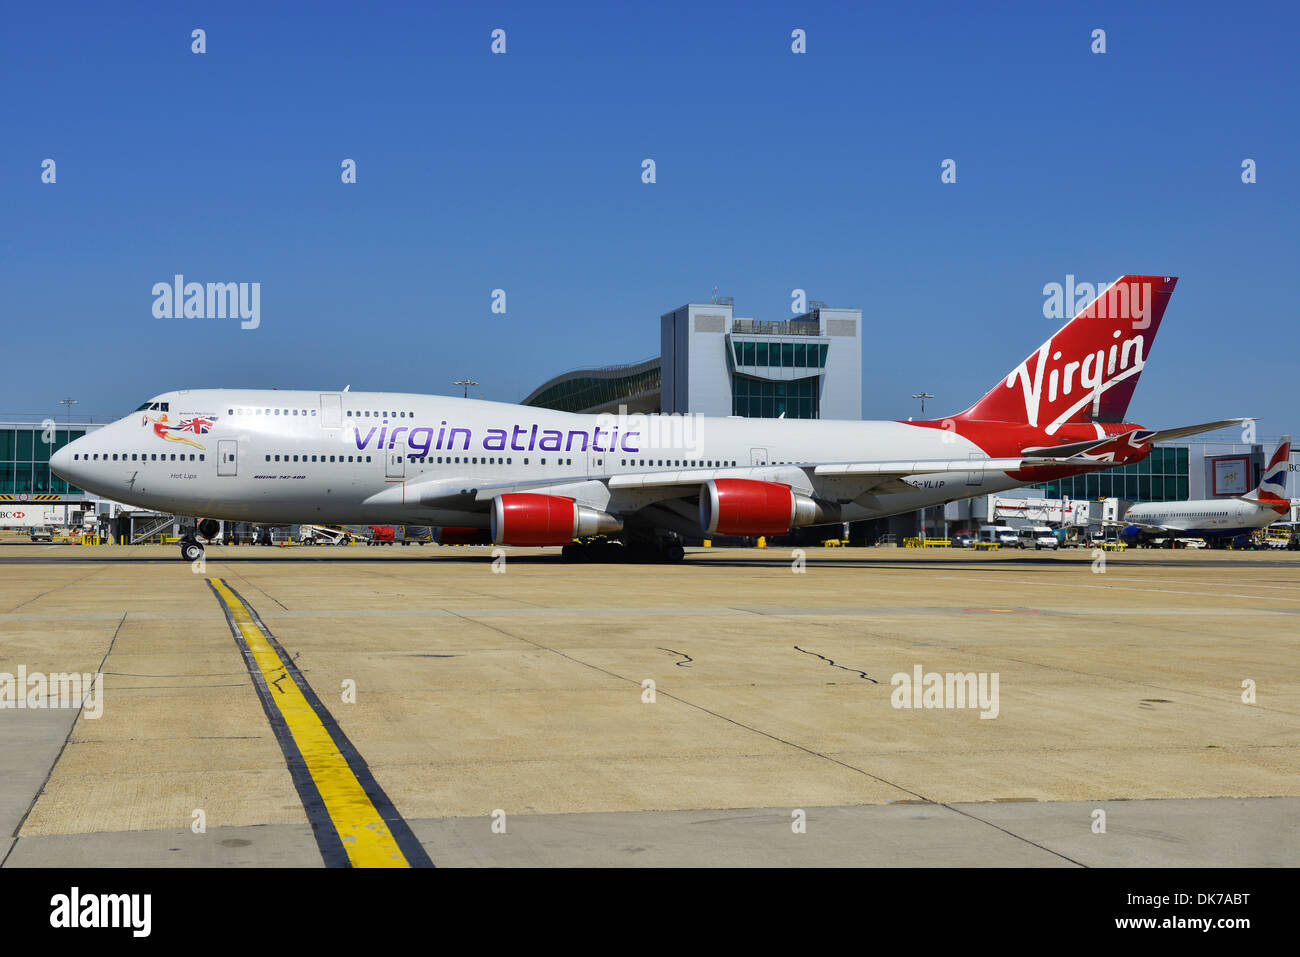 Virgin Atlantic Boeing 747 at Gatwick Airport Terminal, London, Britain, UK Stock Photo